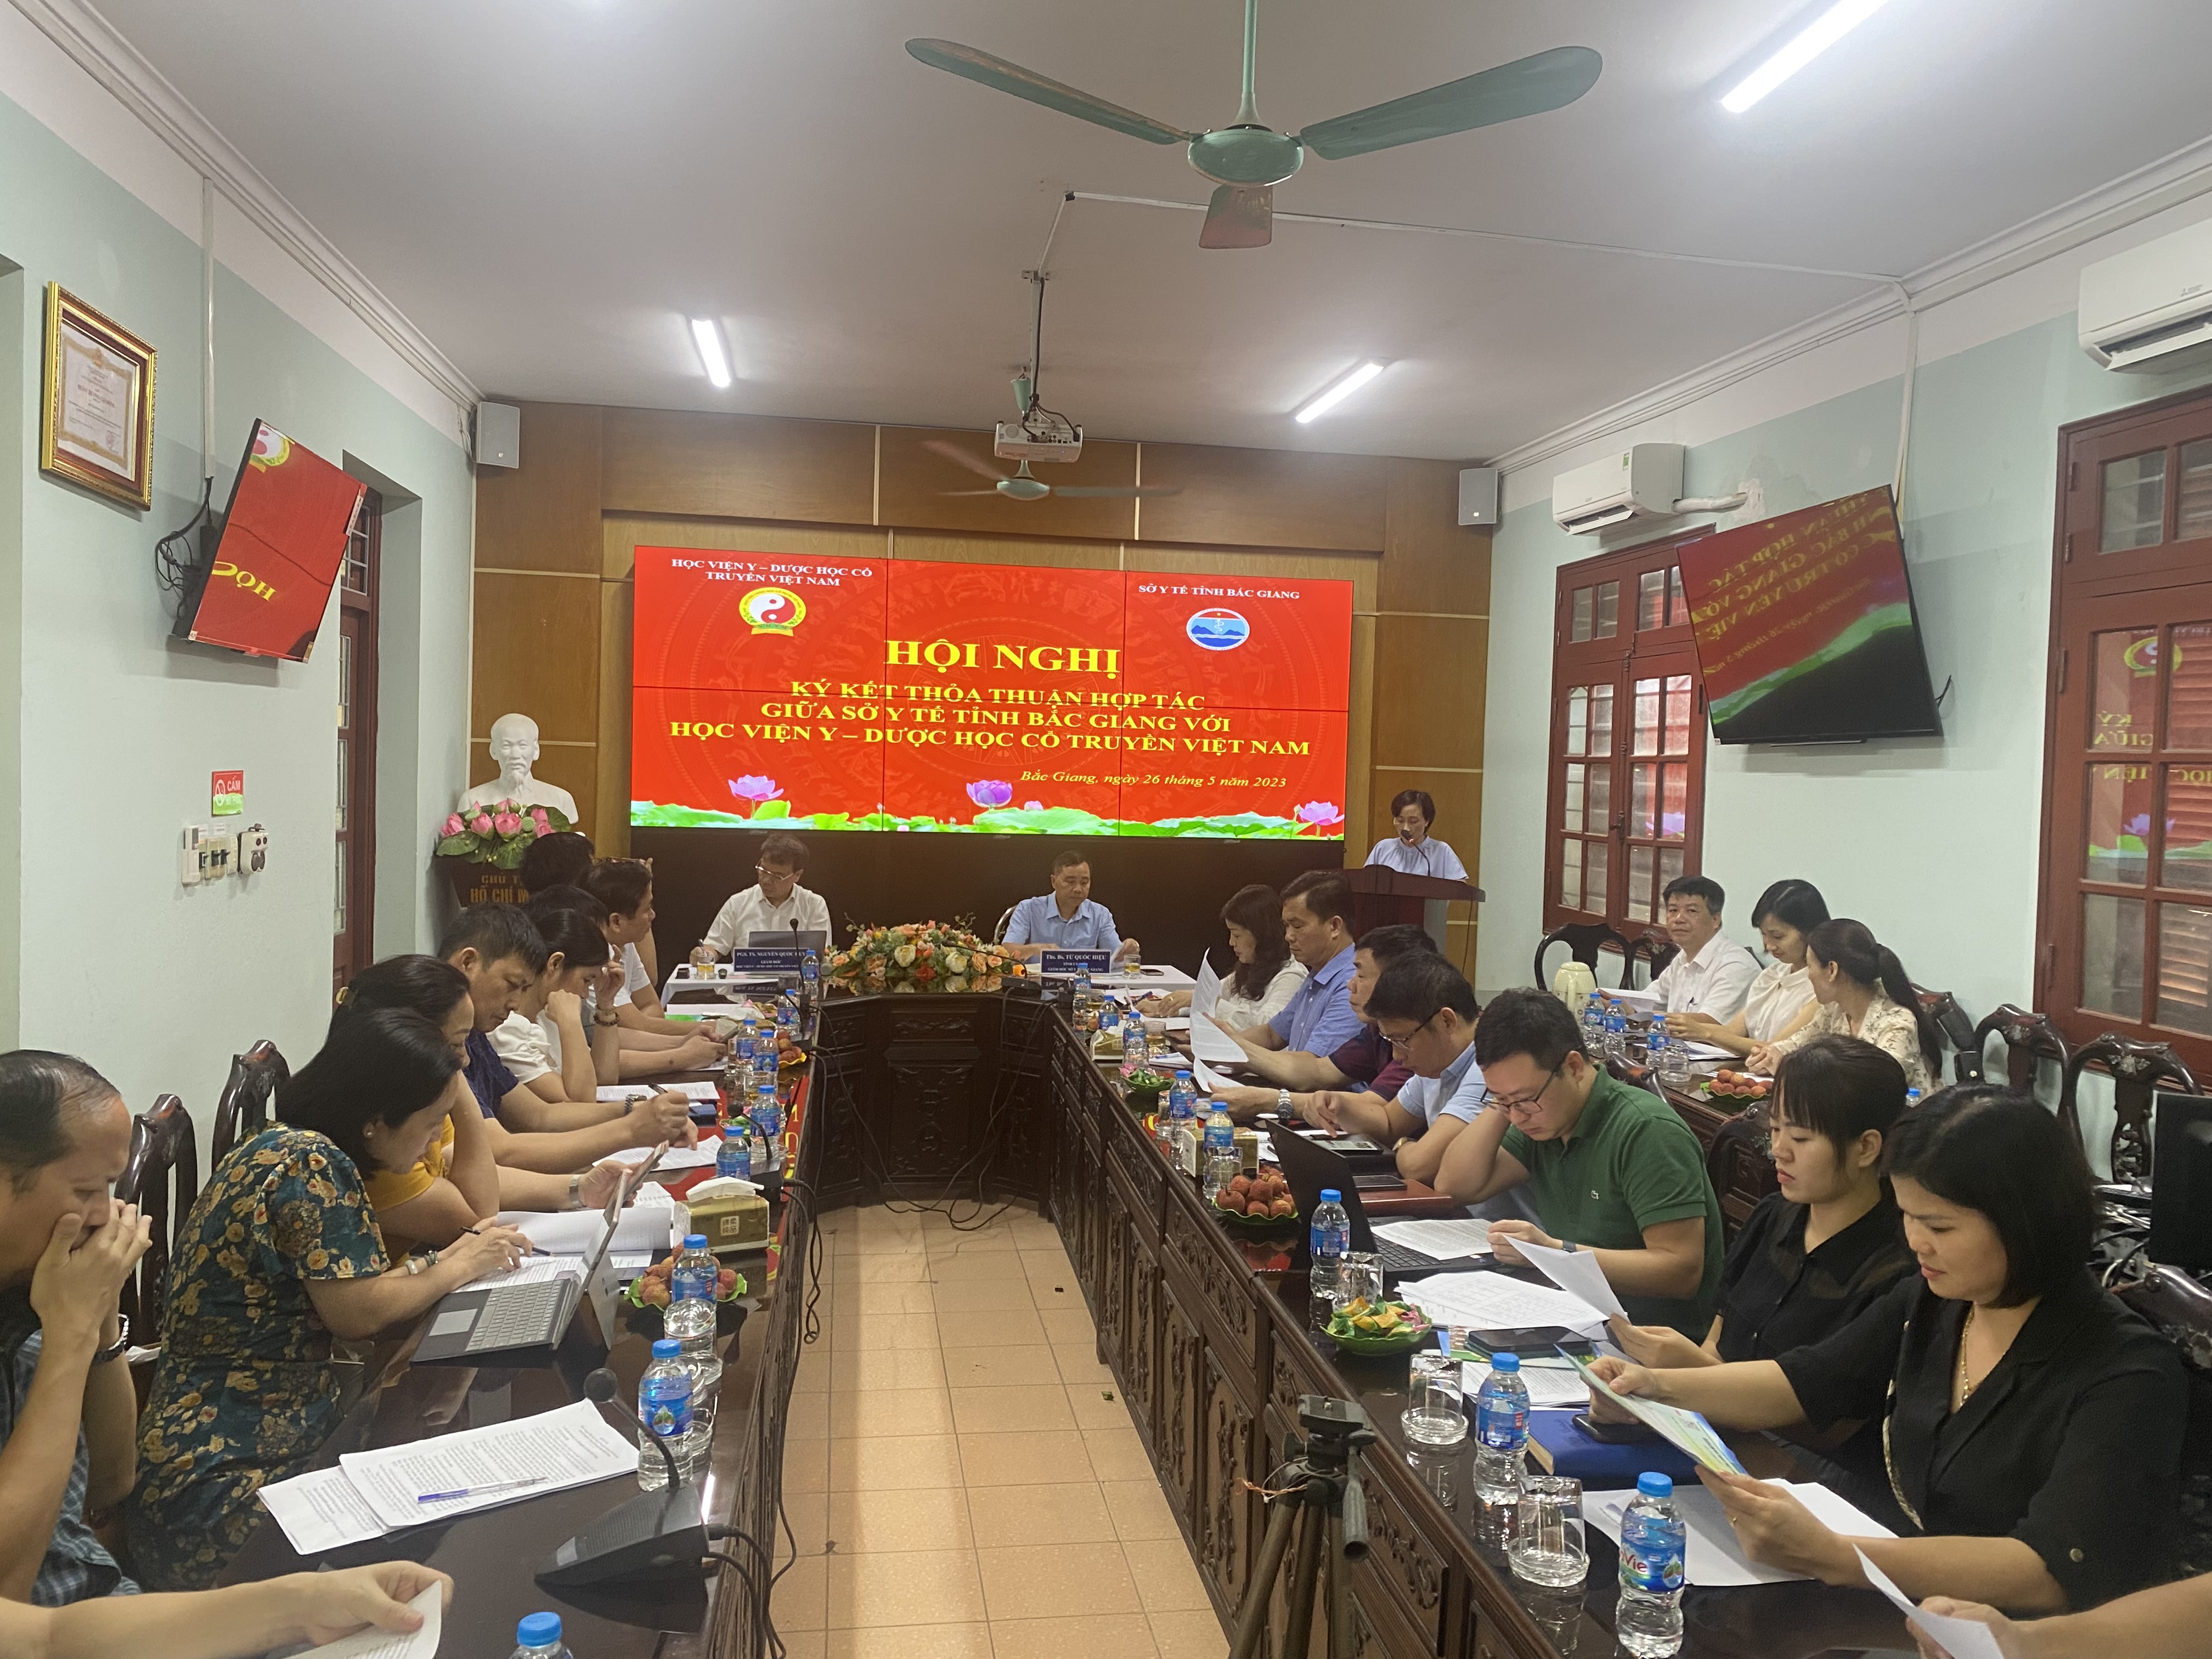 Học viện Y – Dược học cổ truyền Việt Nam hợp tác với Sở Y tế tỉnh Bắc Giang|https://kiemsoatbenhtatbacgiang.vn/ja_JP/chi-tiet-tin-tuc/-/asset_publisher/M0UUAFstbTMq/content/hoc-vien-y-duoc-hoc-co-truyen-viet-nam-hop-tac-voi-so-y-te-tinh-bac-giang